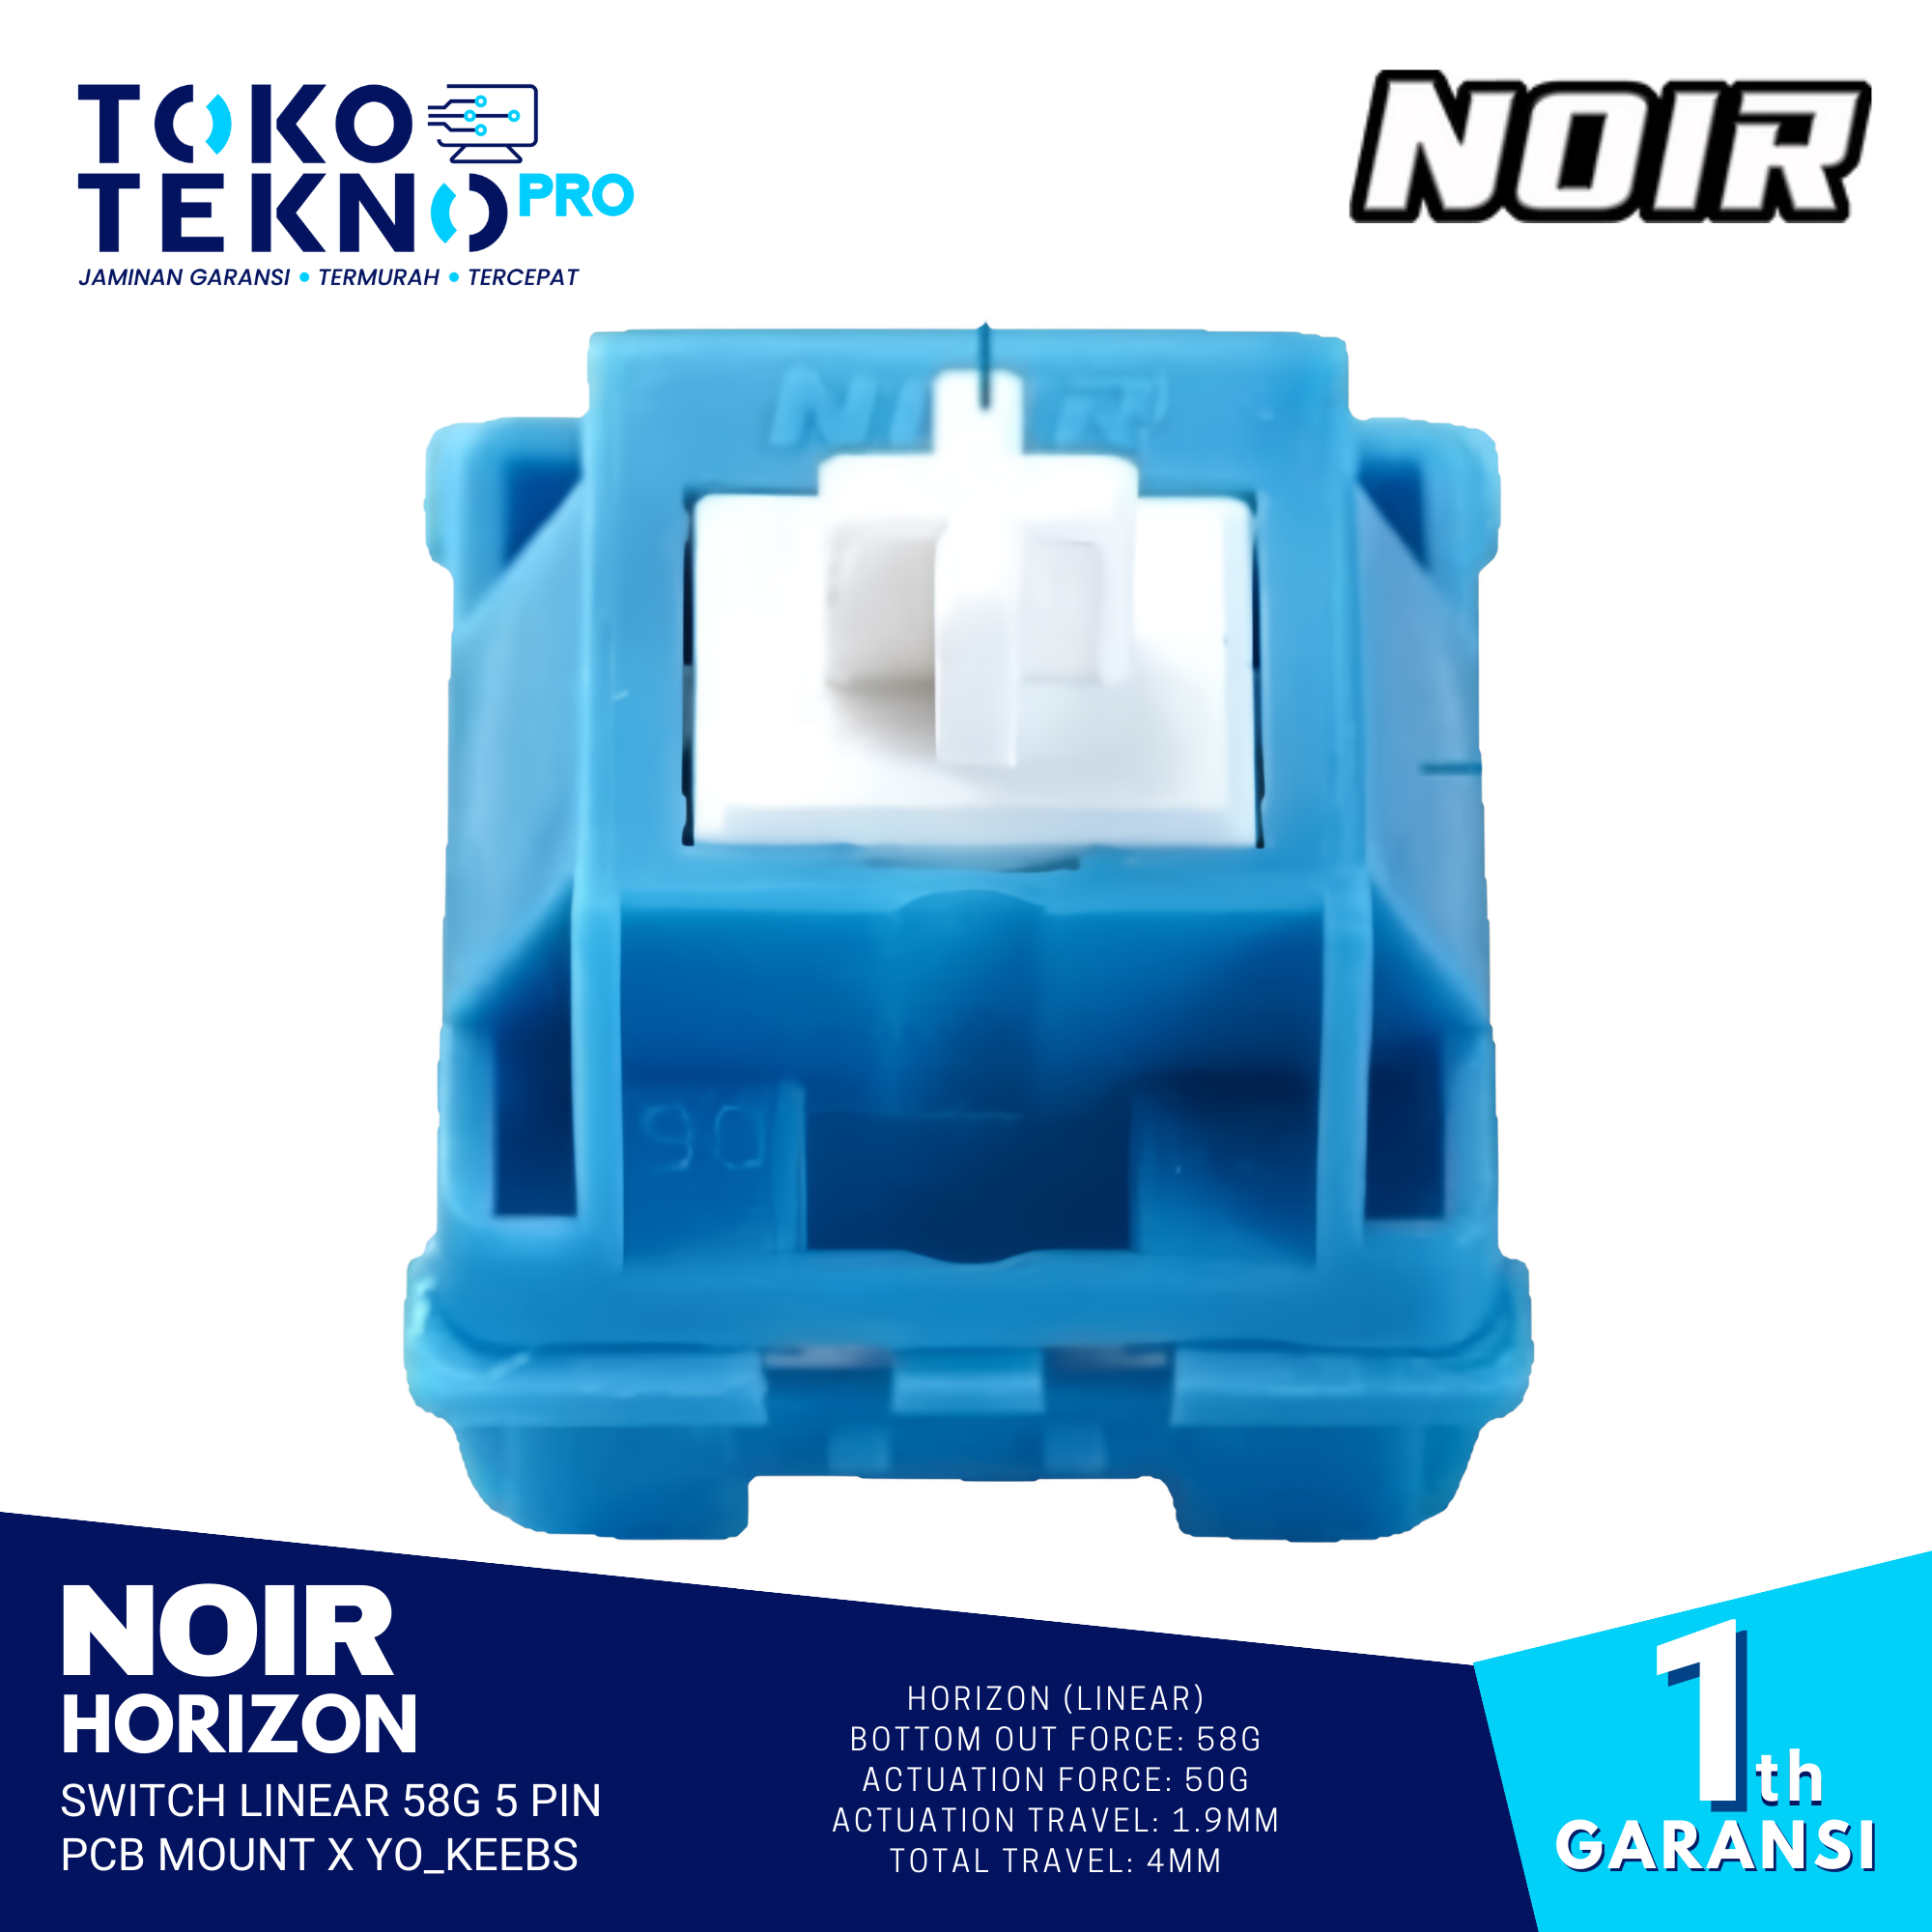 Noir Horizon Switch Linear 58g 5 Pin PCB Mount x Yo_keebs